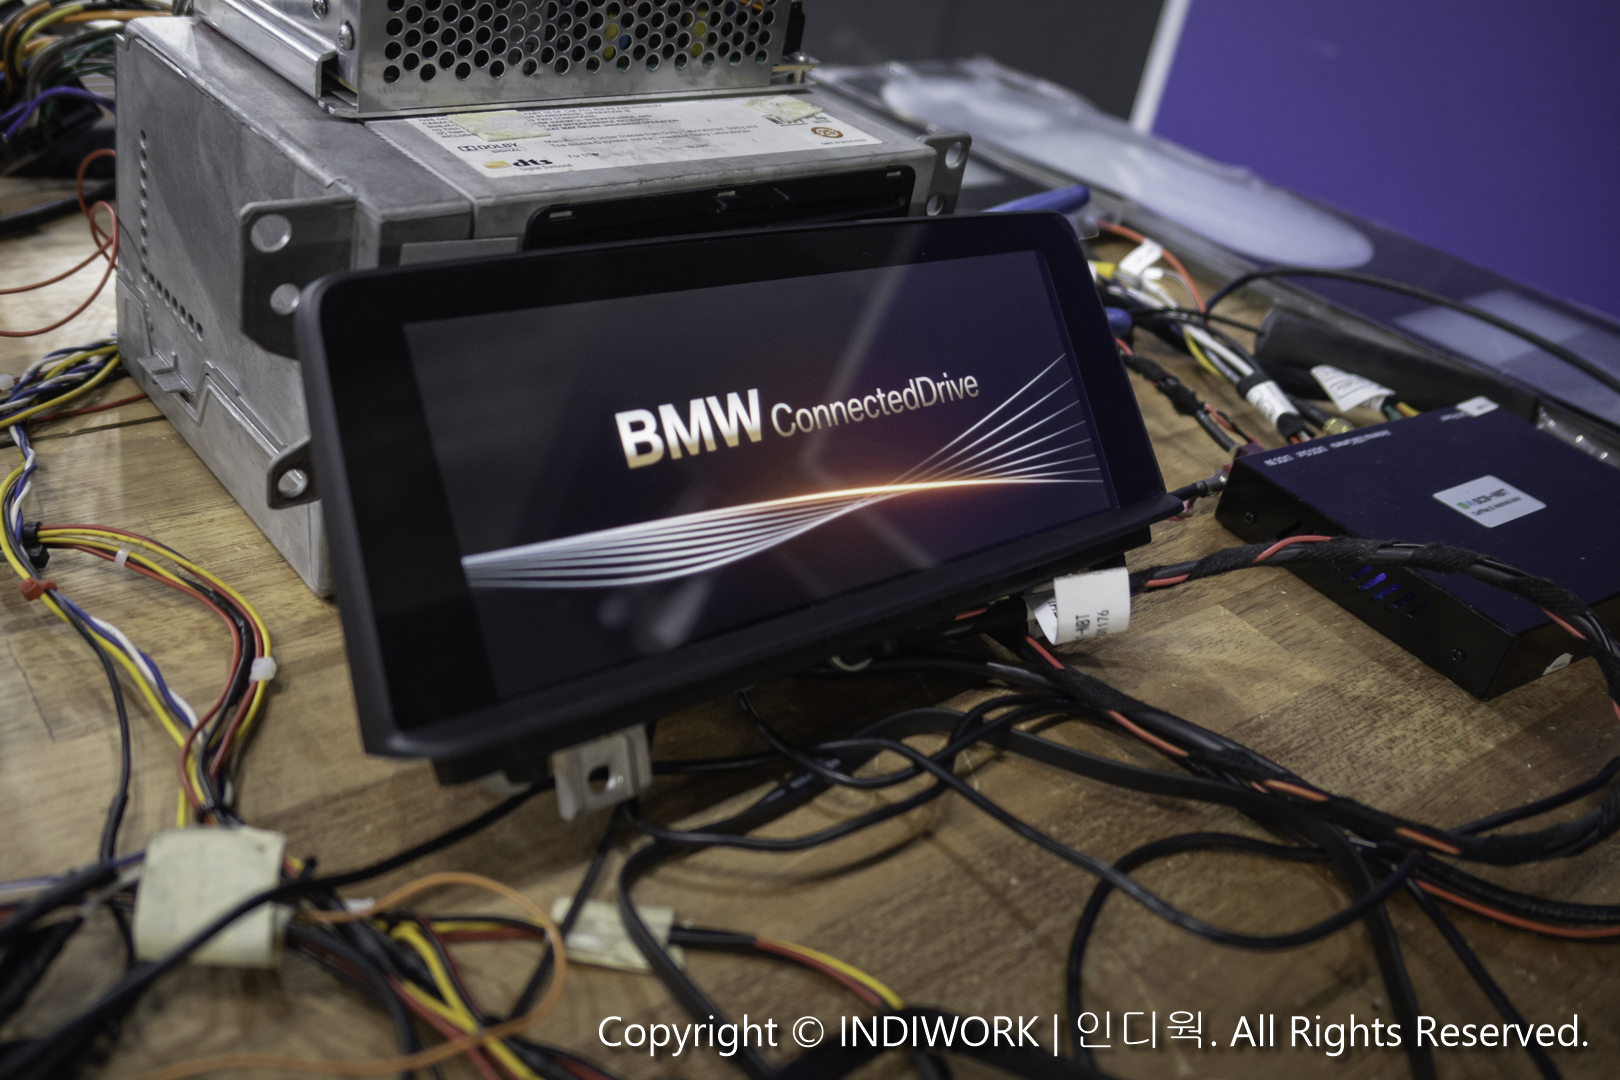 Repair to Broken Screen 2012 BMW F30